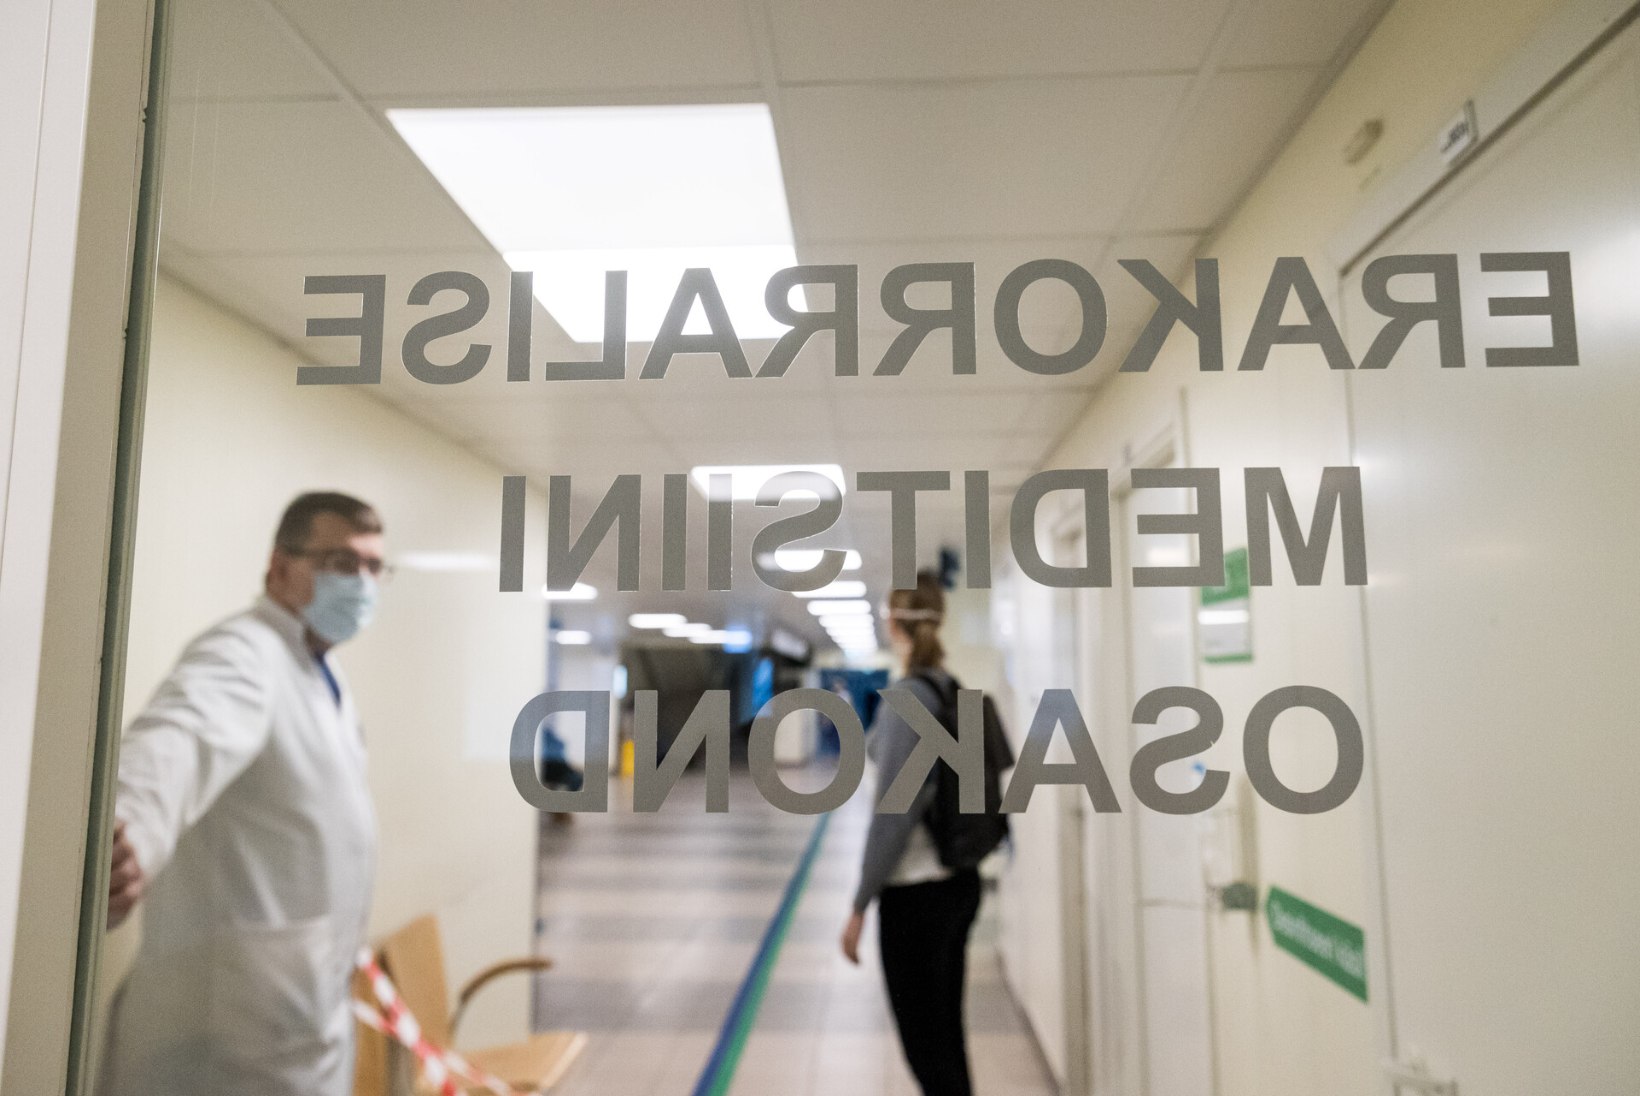 Koroonaviiruse taandumise mõjud: Ida-Tallinna keskhaiglas on taastunud plaaniline ravi kõikidel erialadel, Põhja meditsiinistaap lõpetab regulaarsed kohtumised